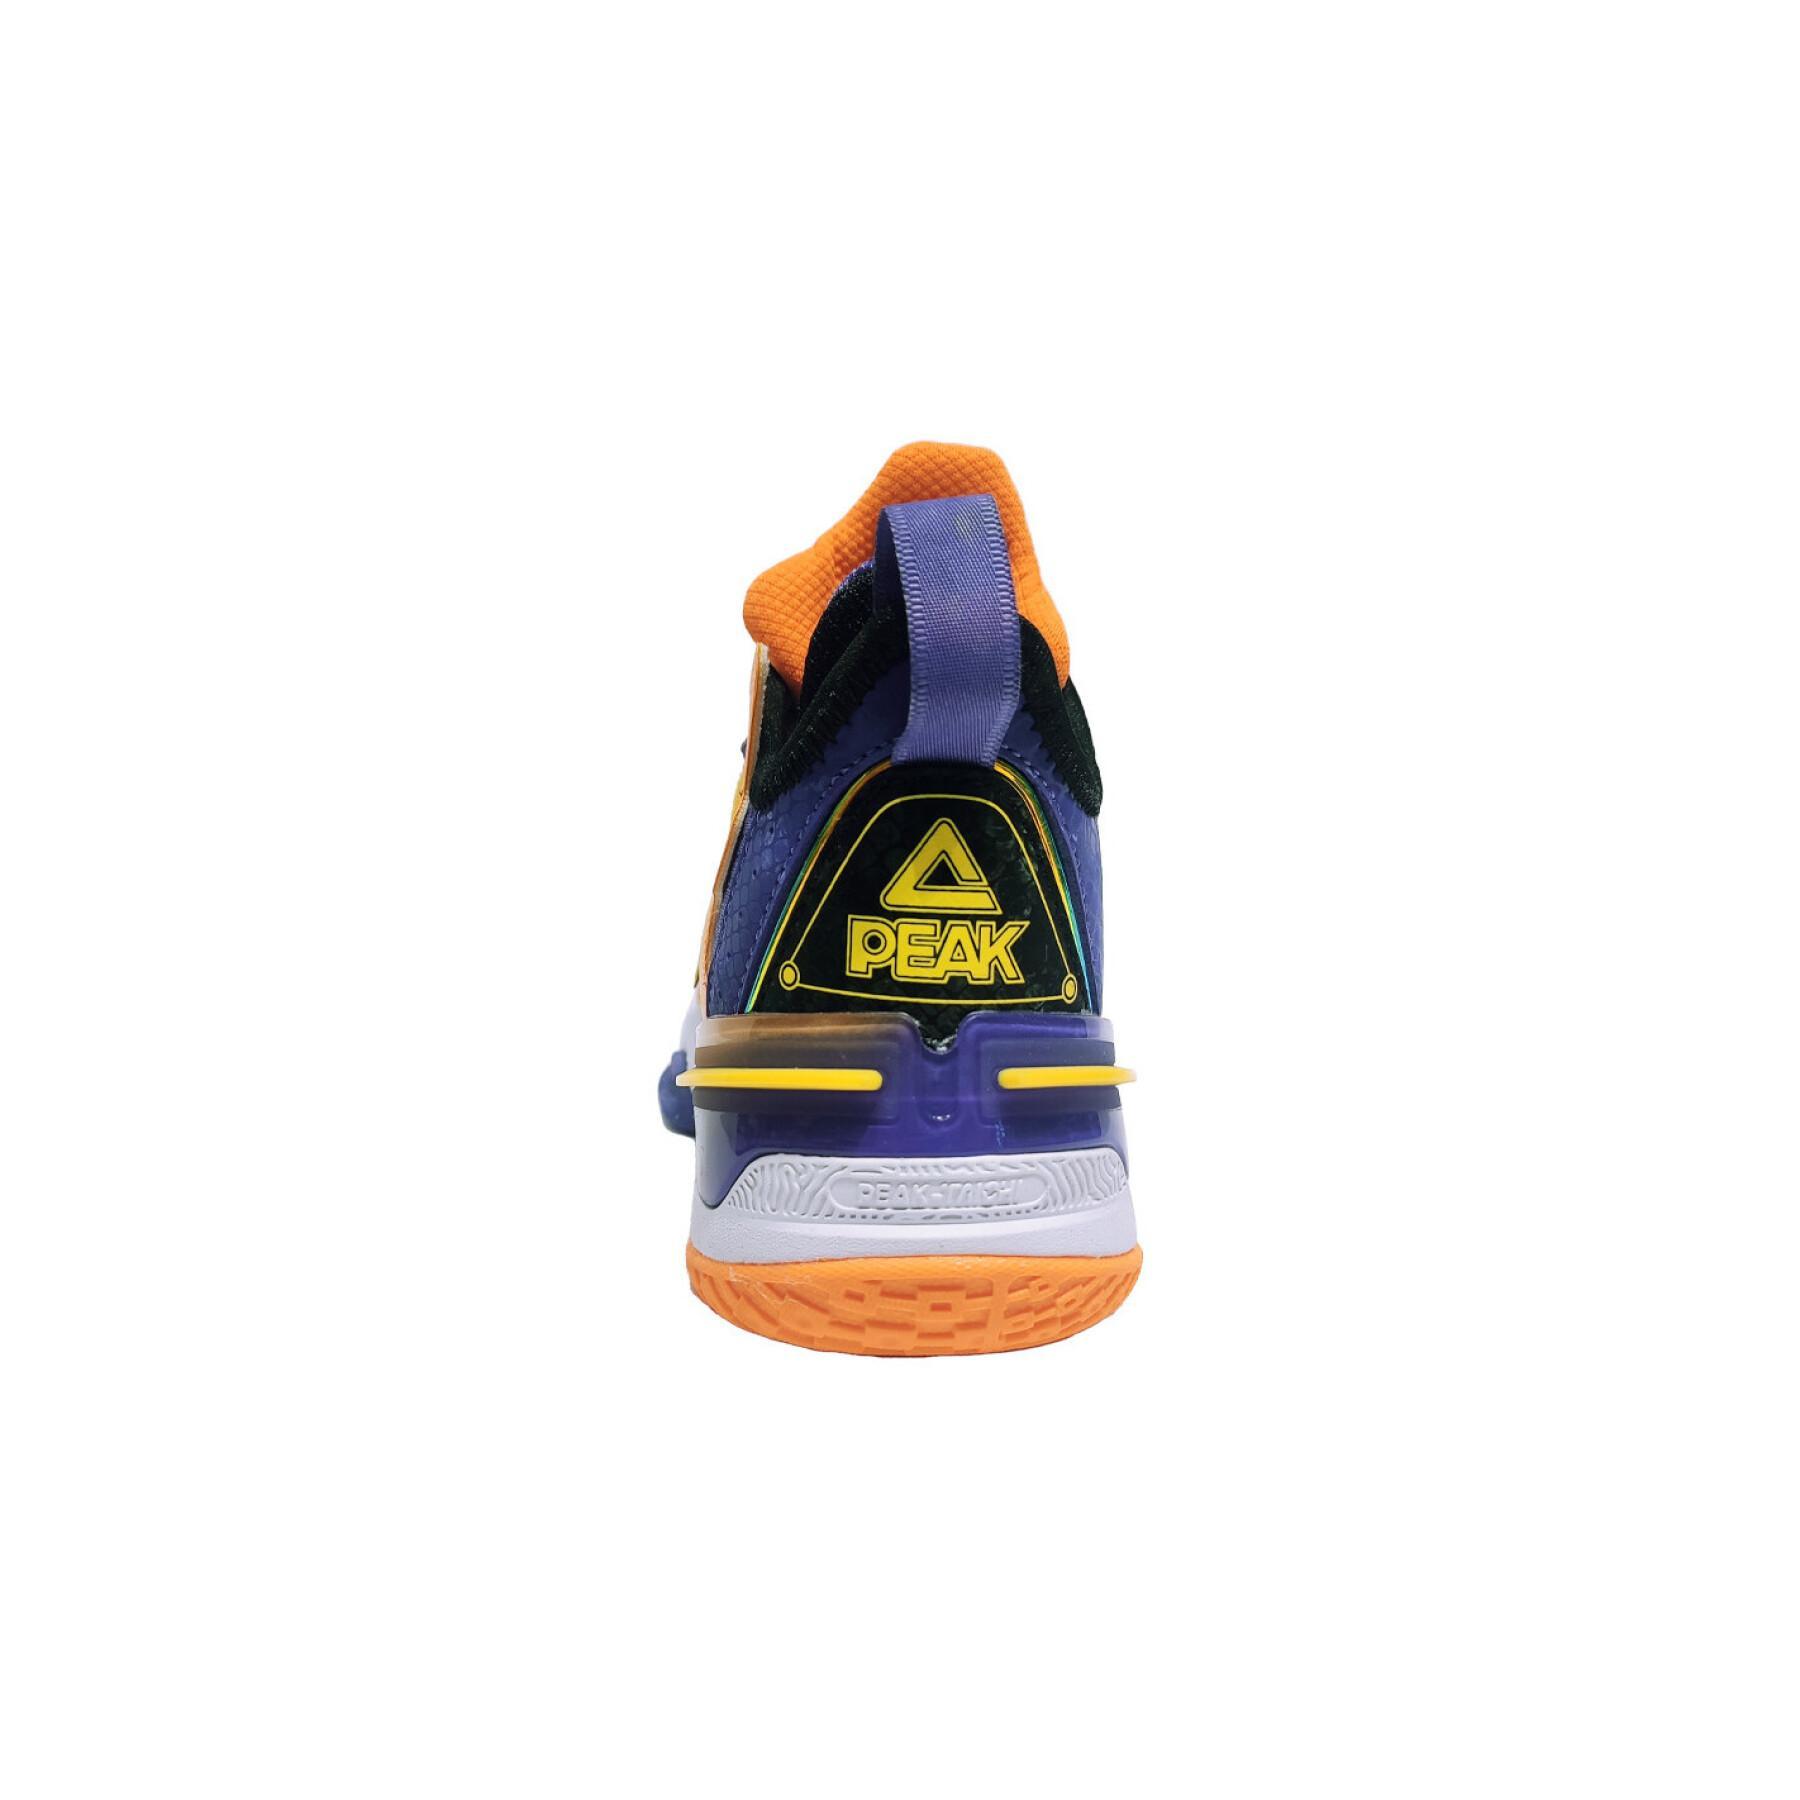 Children's indoor shoes Peak Flash